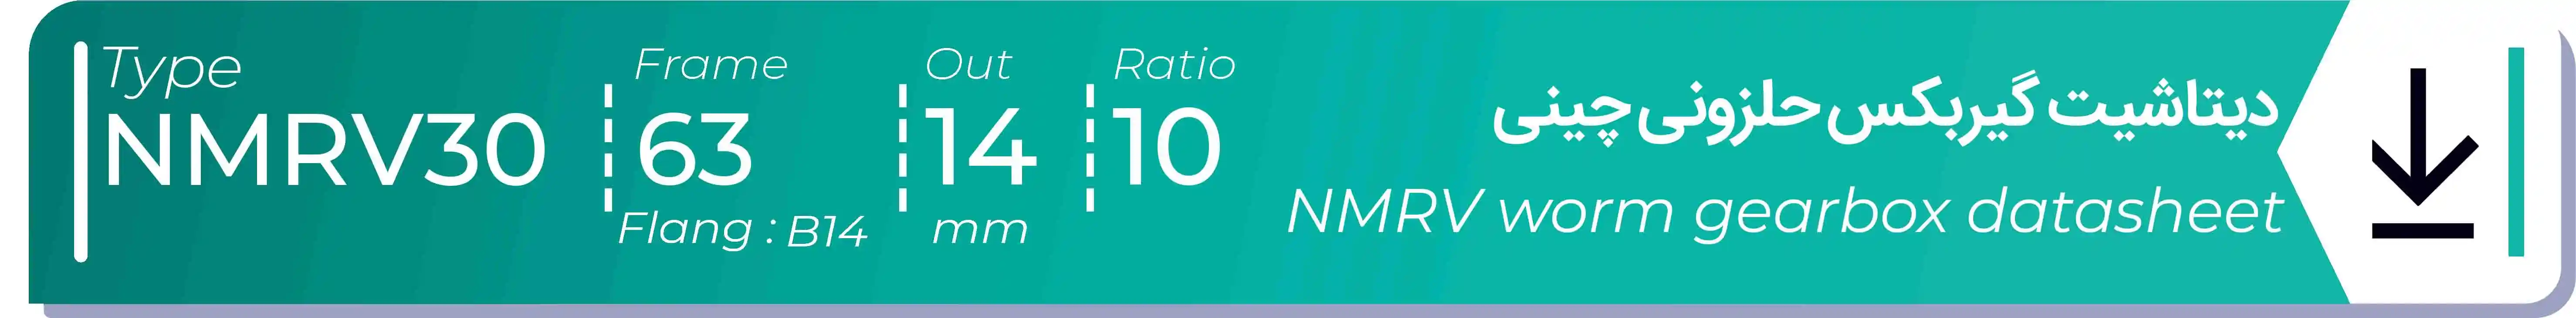  دیتاشیت و مشخصات فنی گیربکس حلزونی چینی   NMRV30  -  با خروجی 14- میلی متر و نسبت10